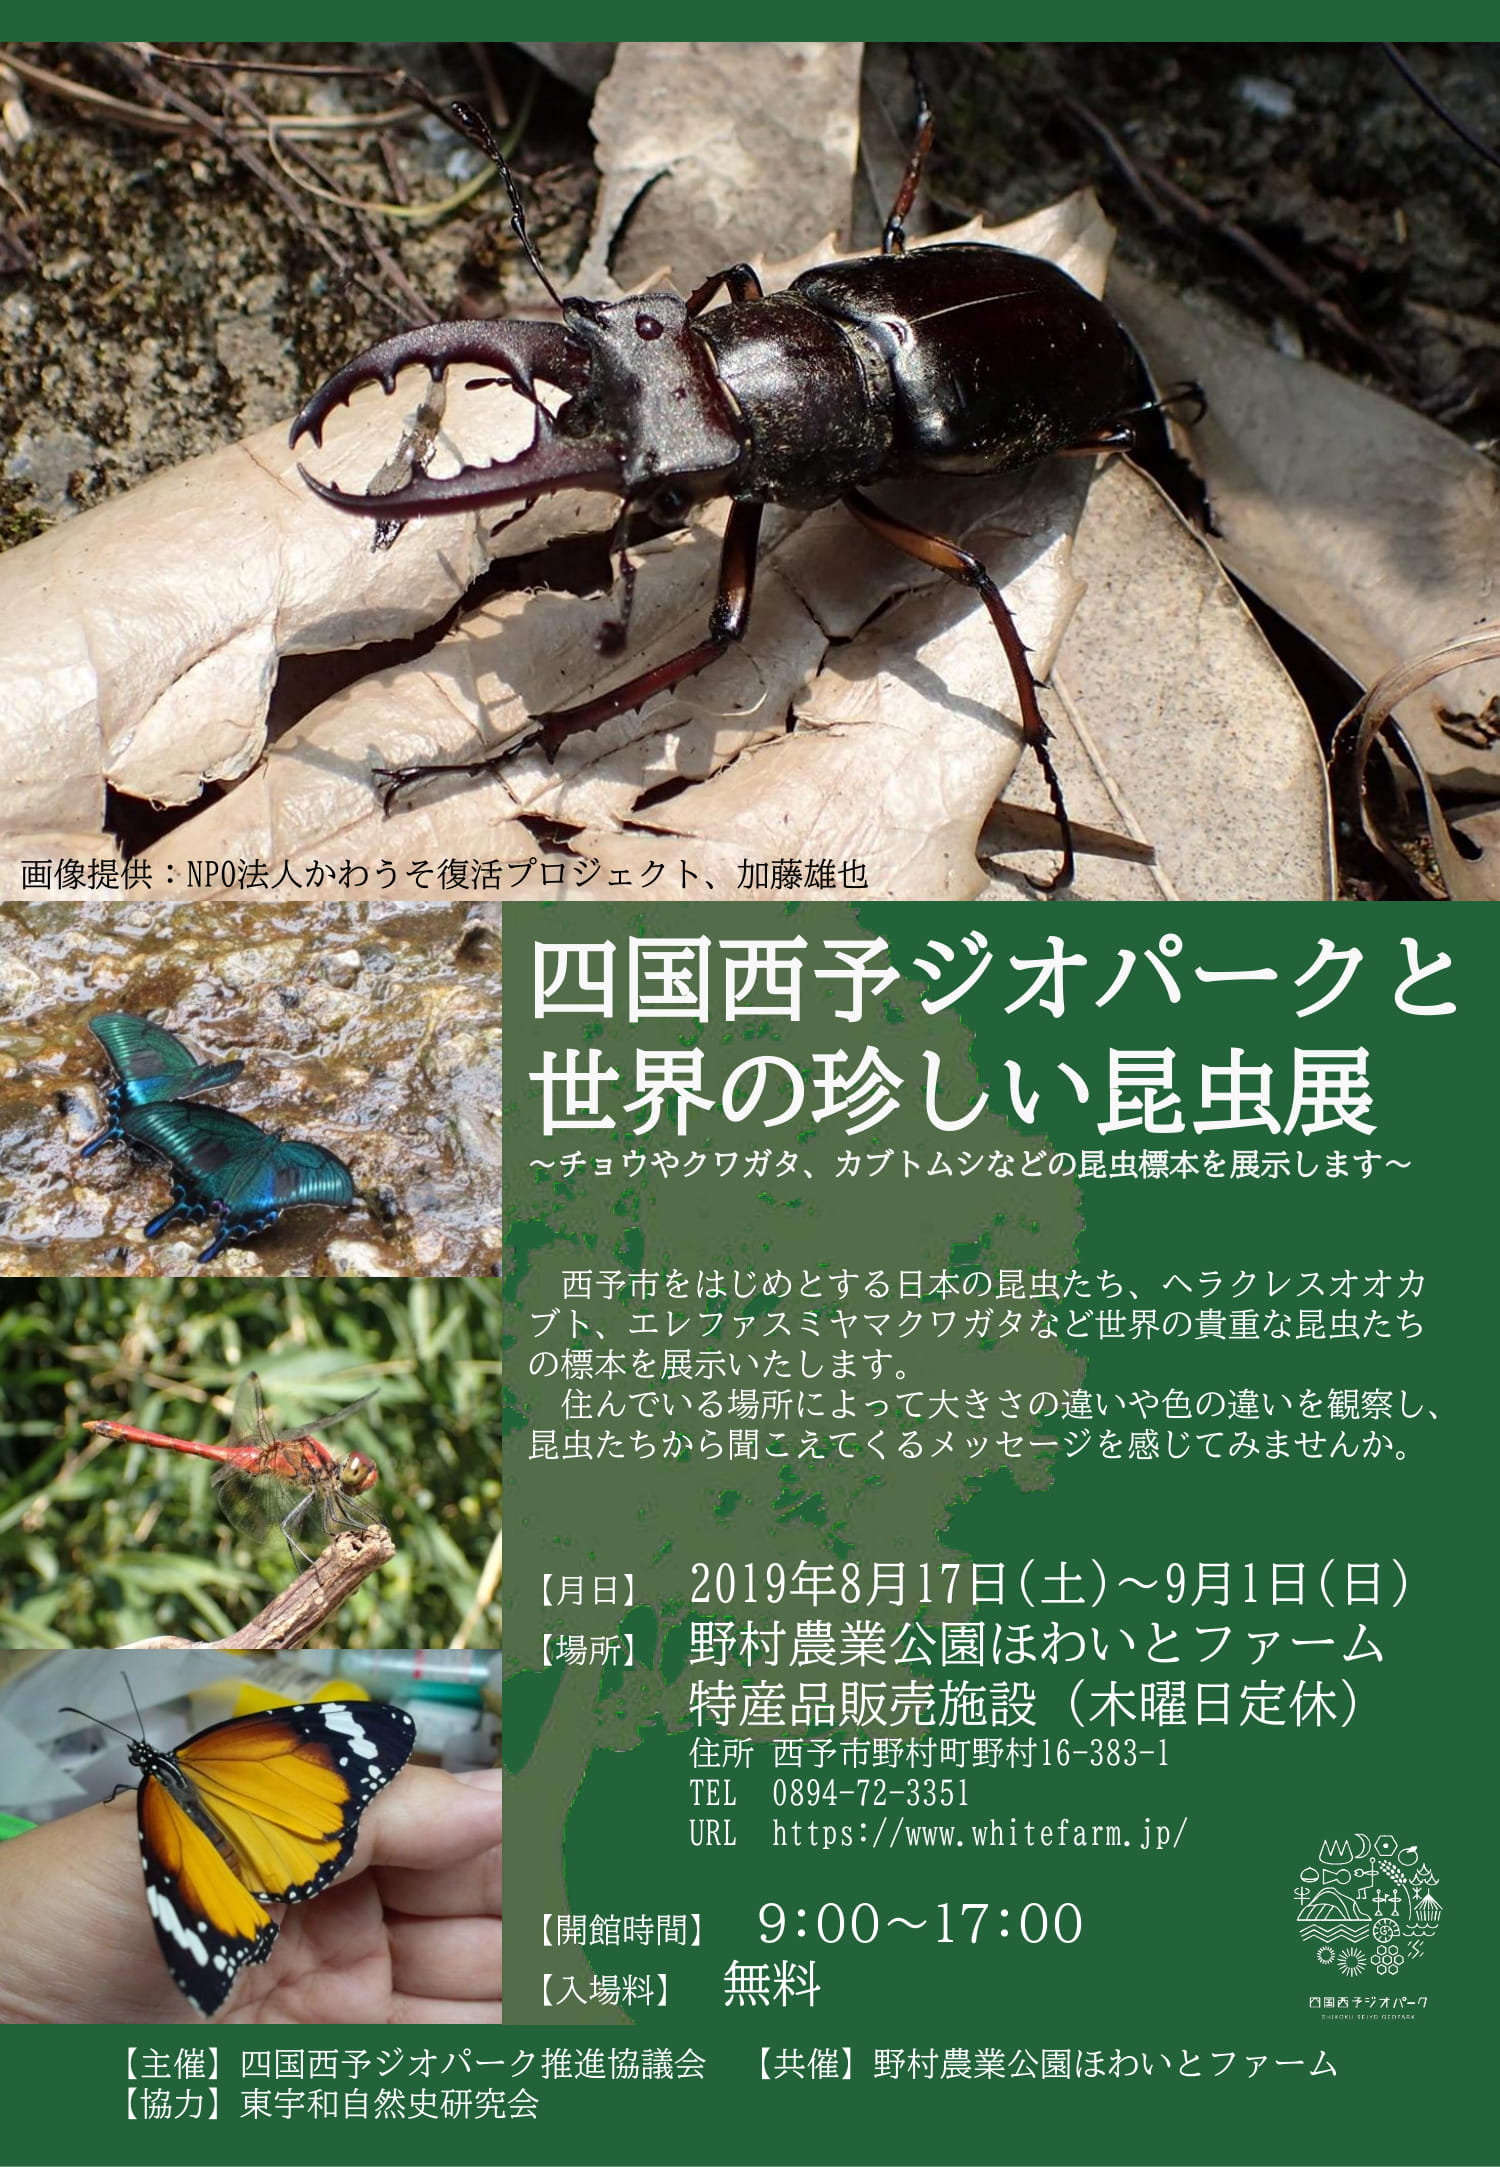 四国西予ジオパークと世界の珍しい昆虫展」を開催します | イベント